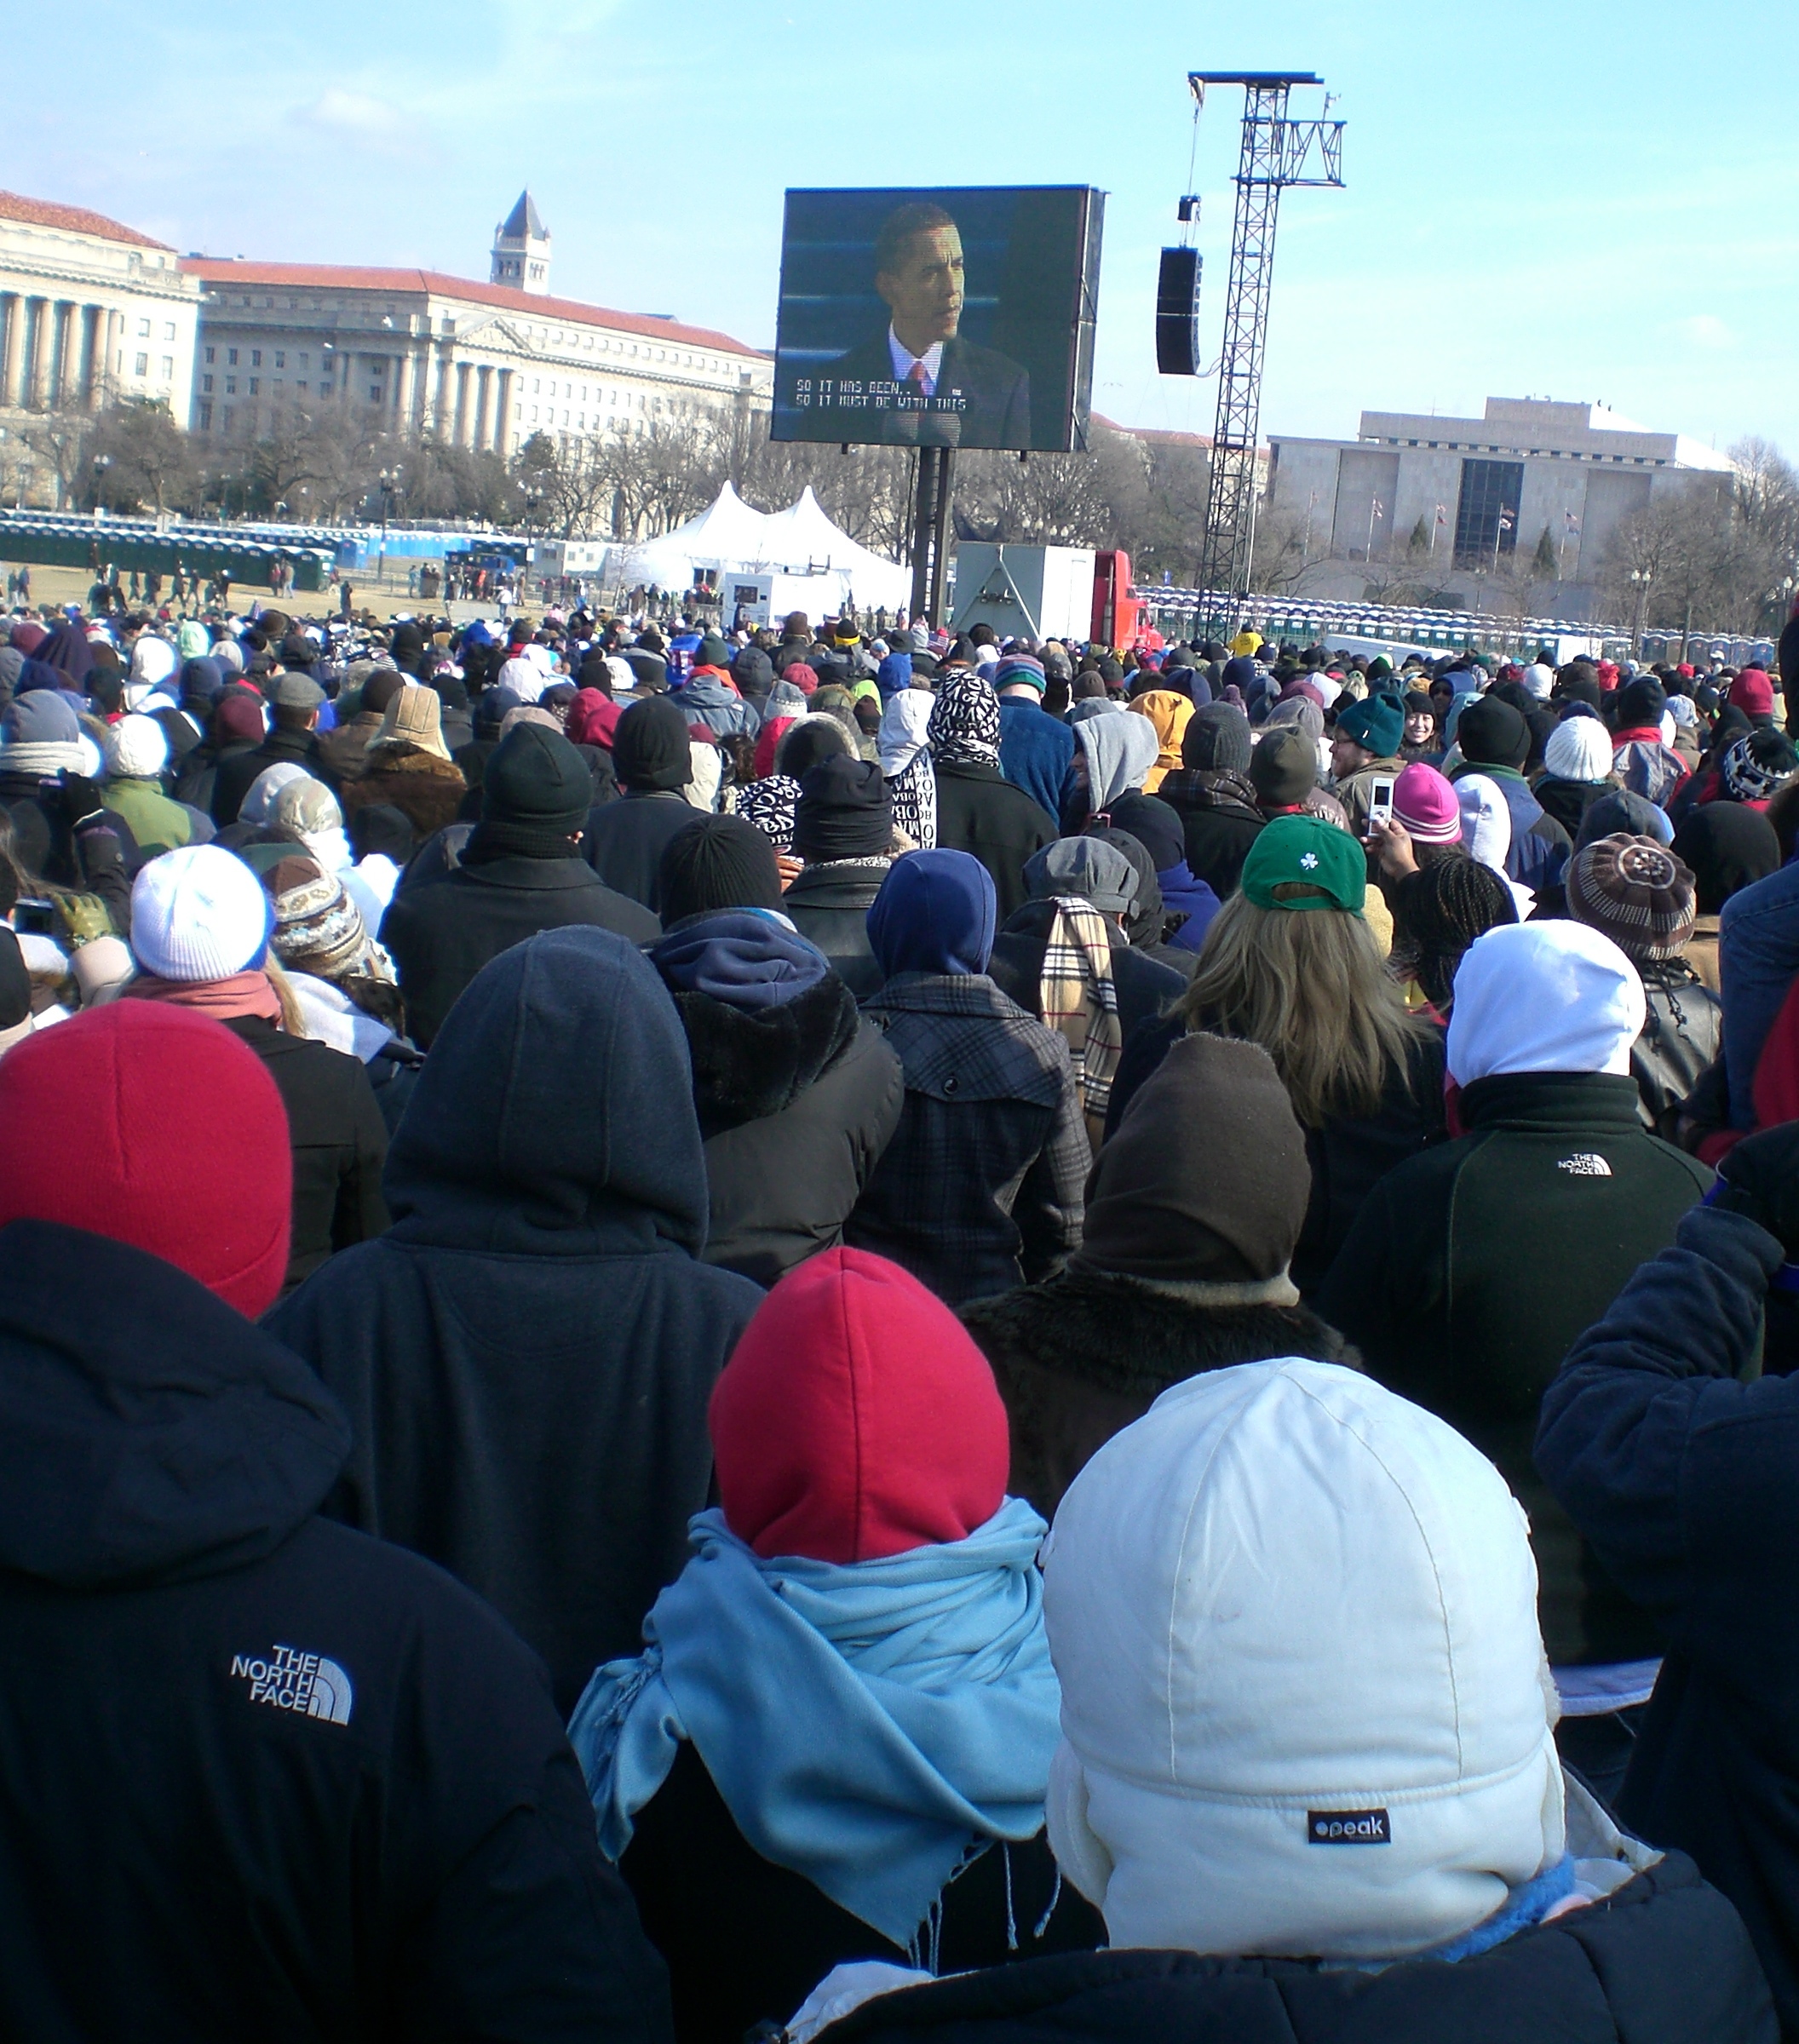 at the inauguration